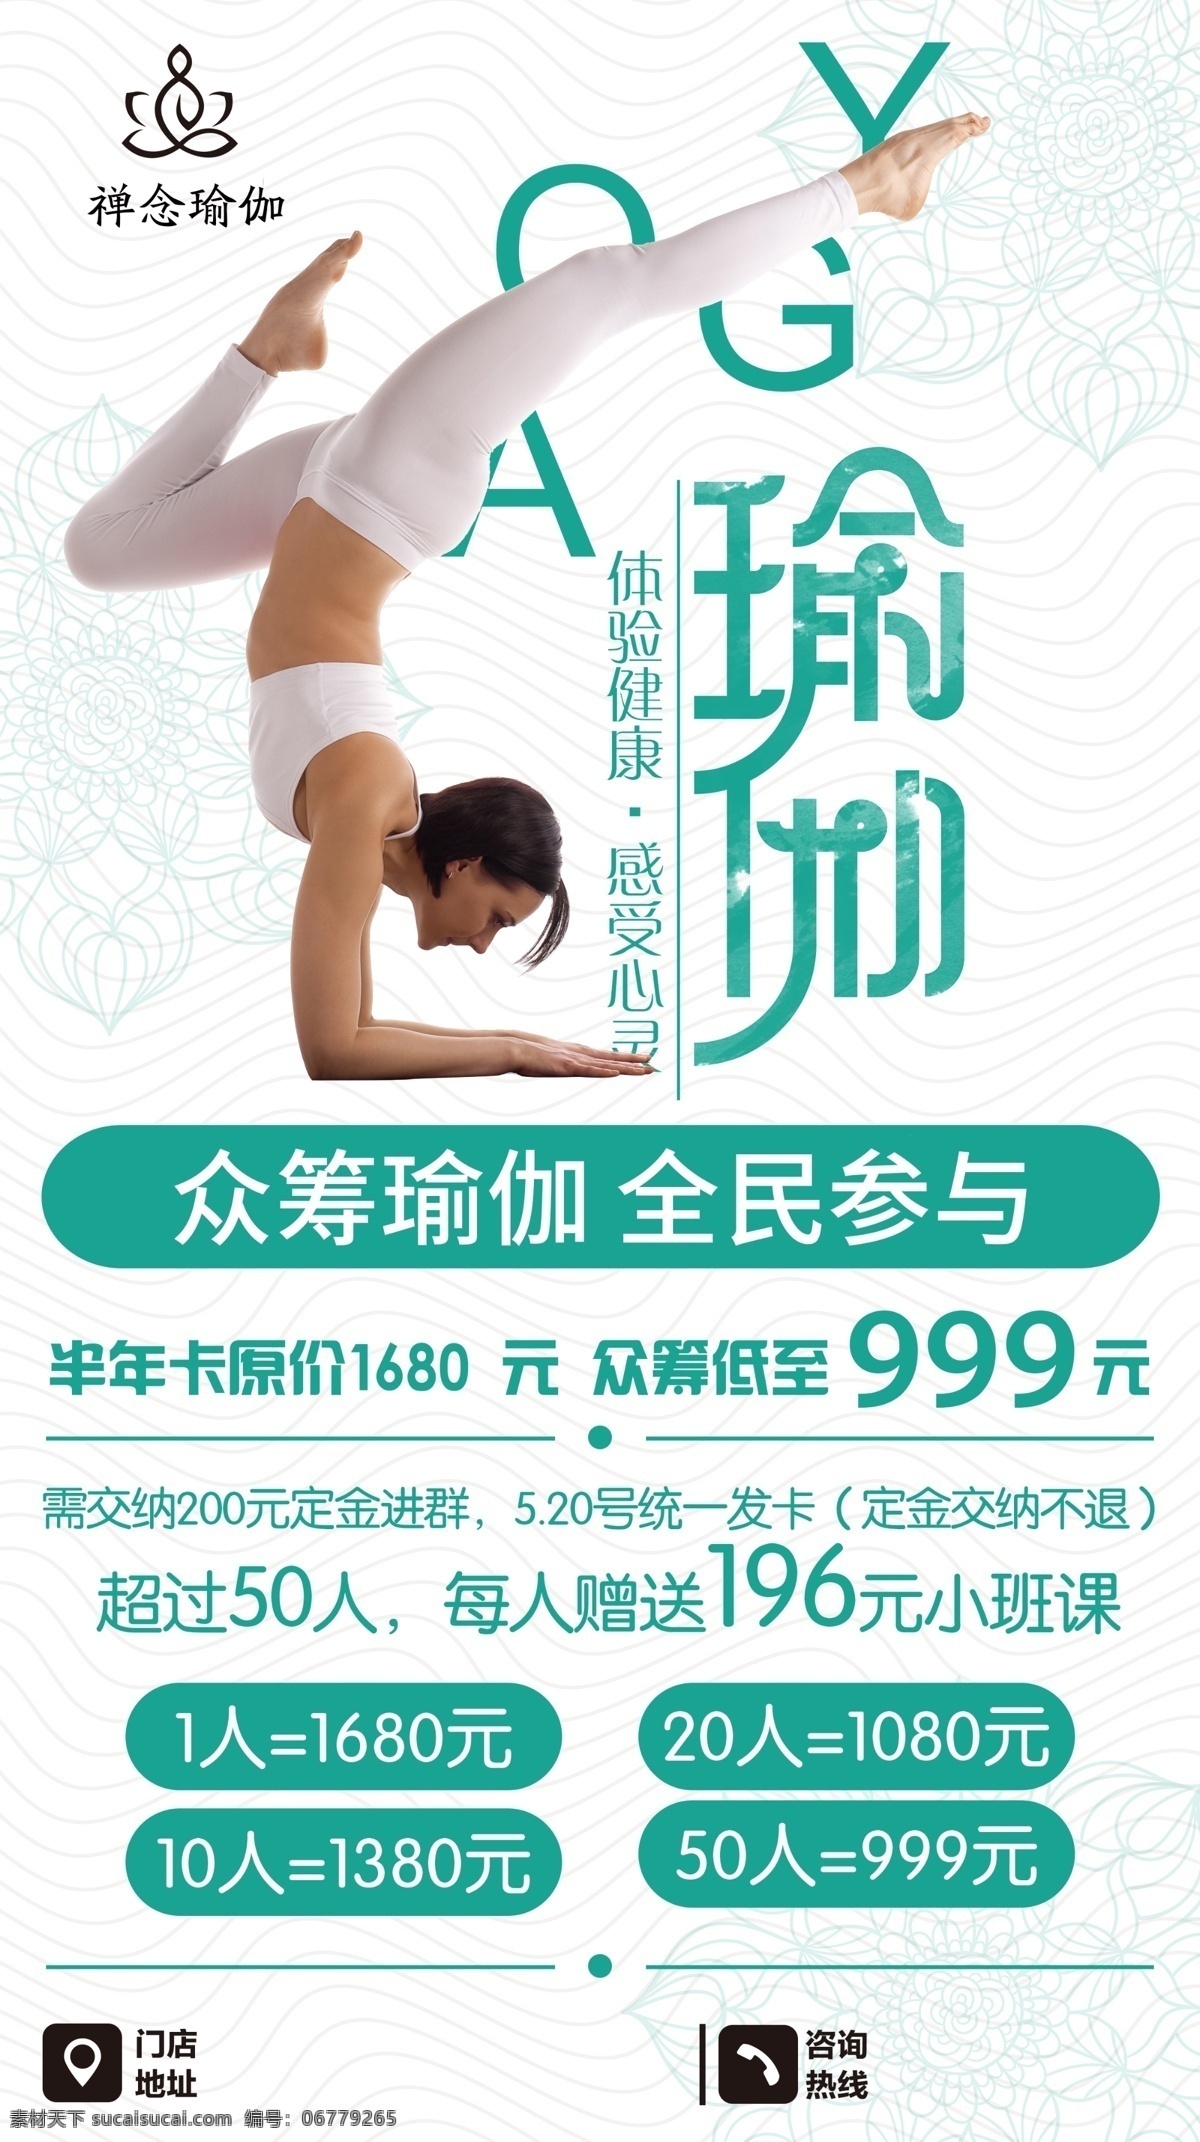 瑜伽海报 瑜伽 瘦身 减肥 健身 美体 美容 普拉提 海报 广告